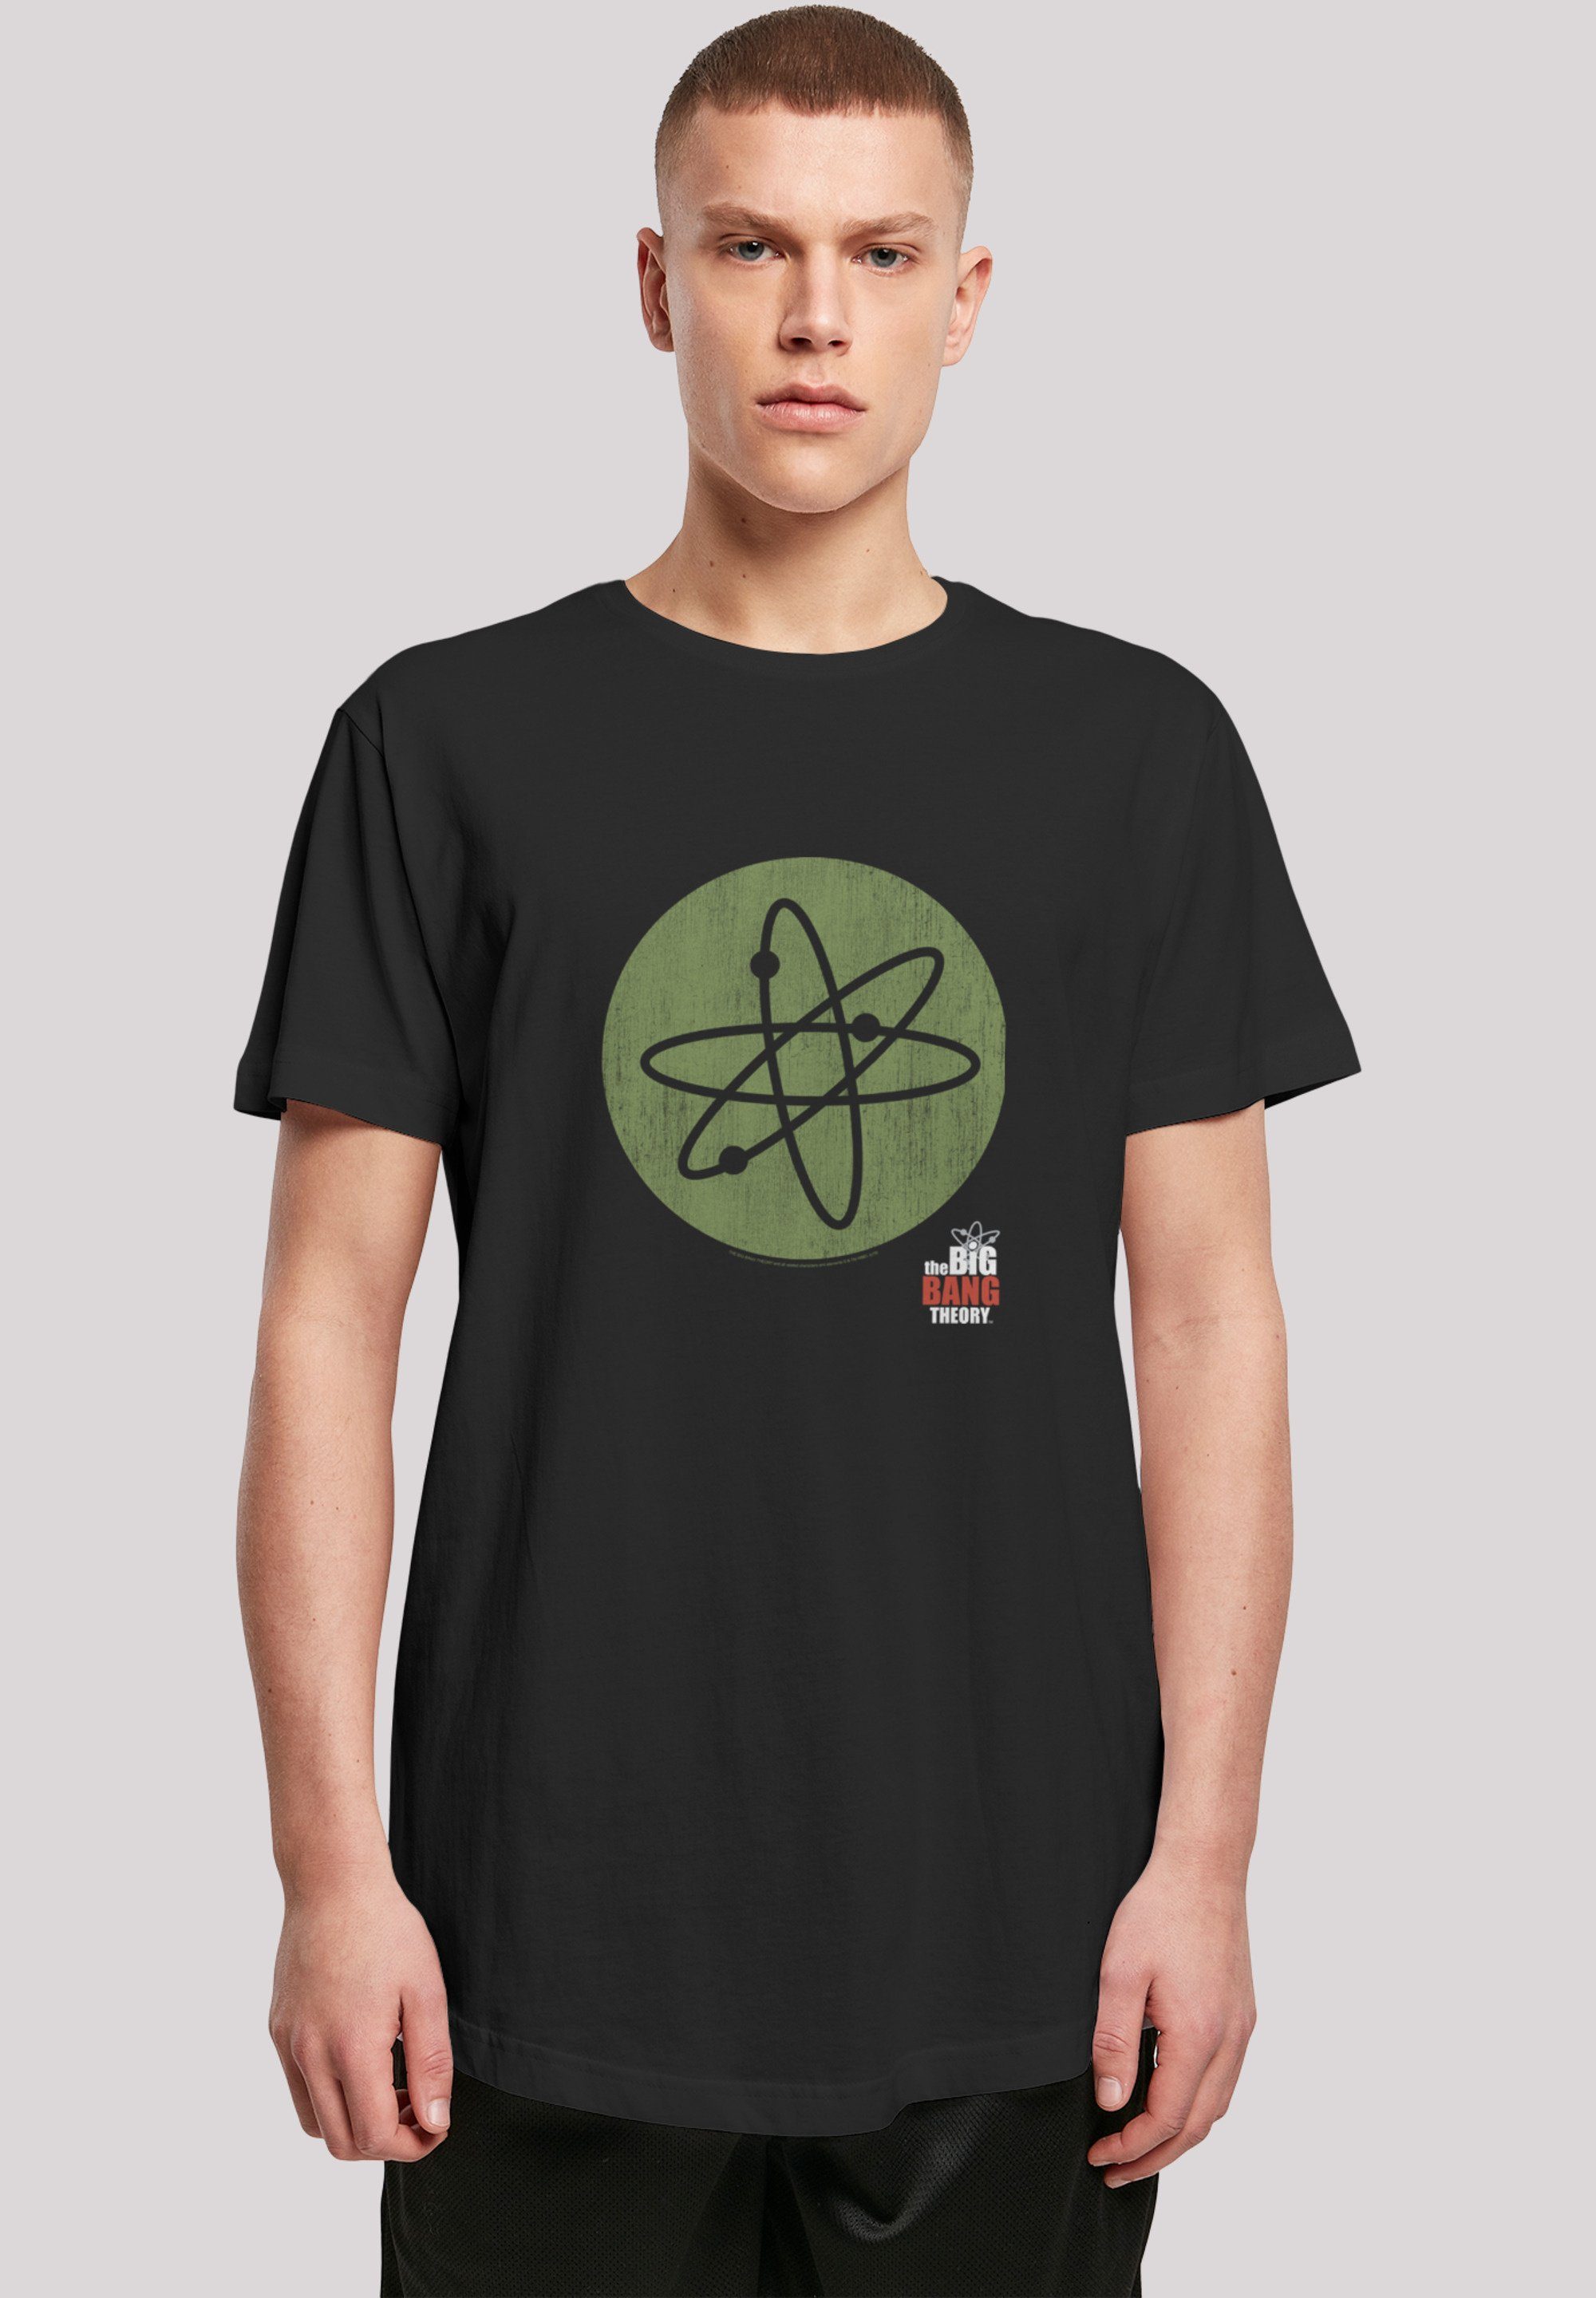 F4NT4STIC T-Shirt Shirt 'Big Bang Theory Big Bang' Print